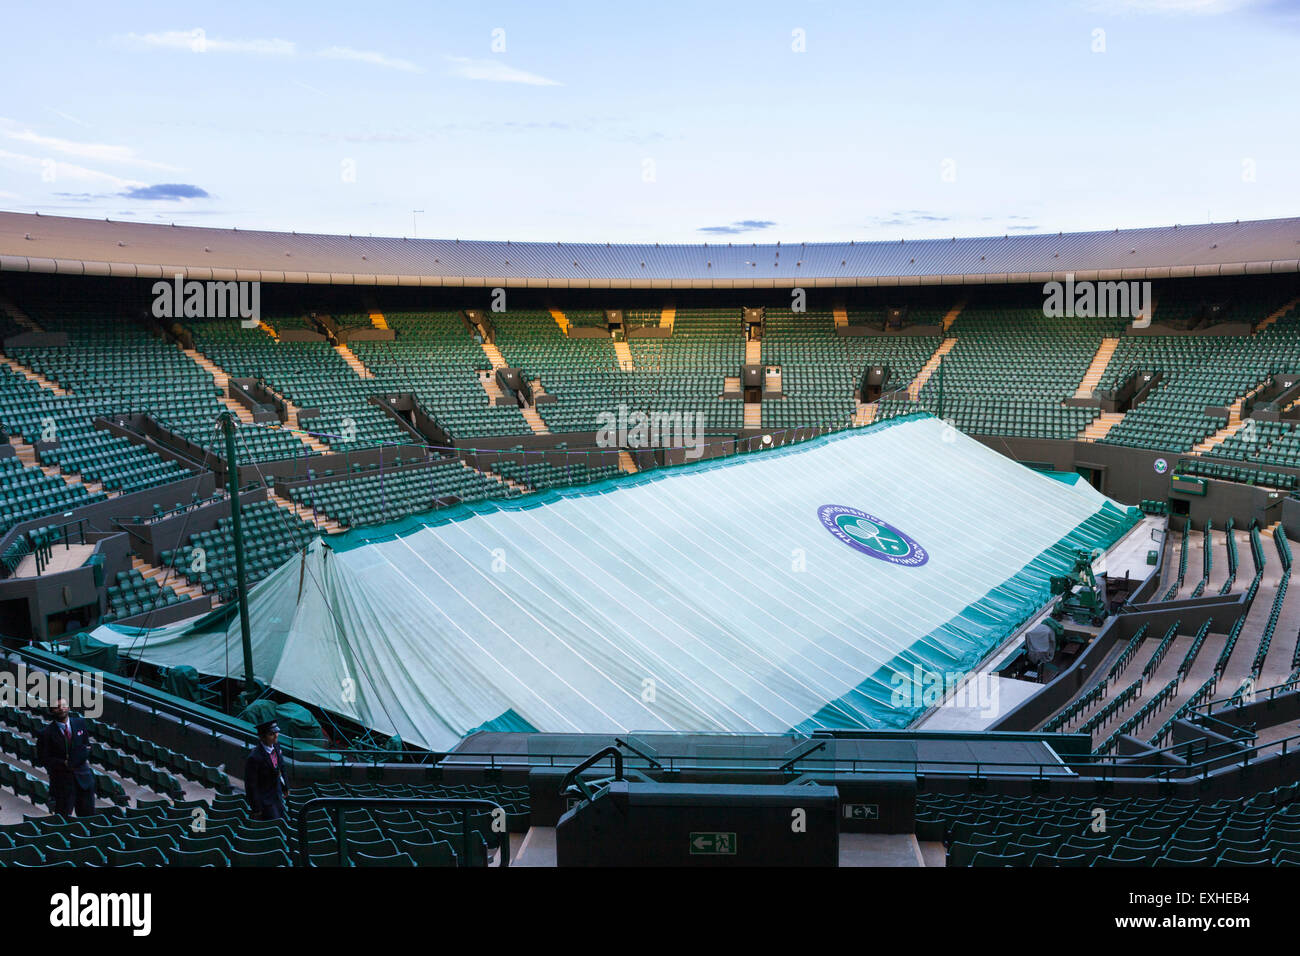 Cour n°1 après le dernier match de la journée à l'All England Lawn Tennis Club durant le tournoi de Wimbledon, Londres Banque D'Images